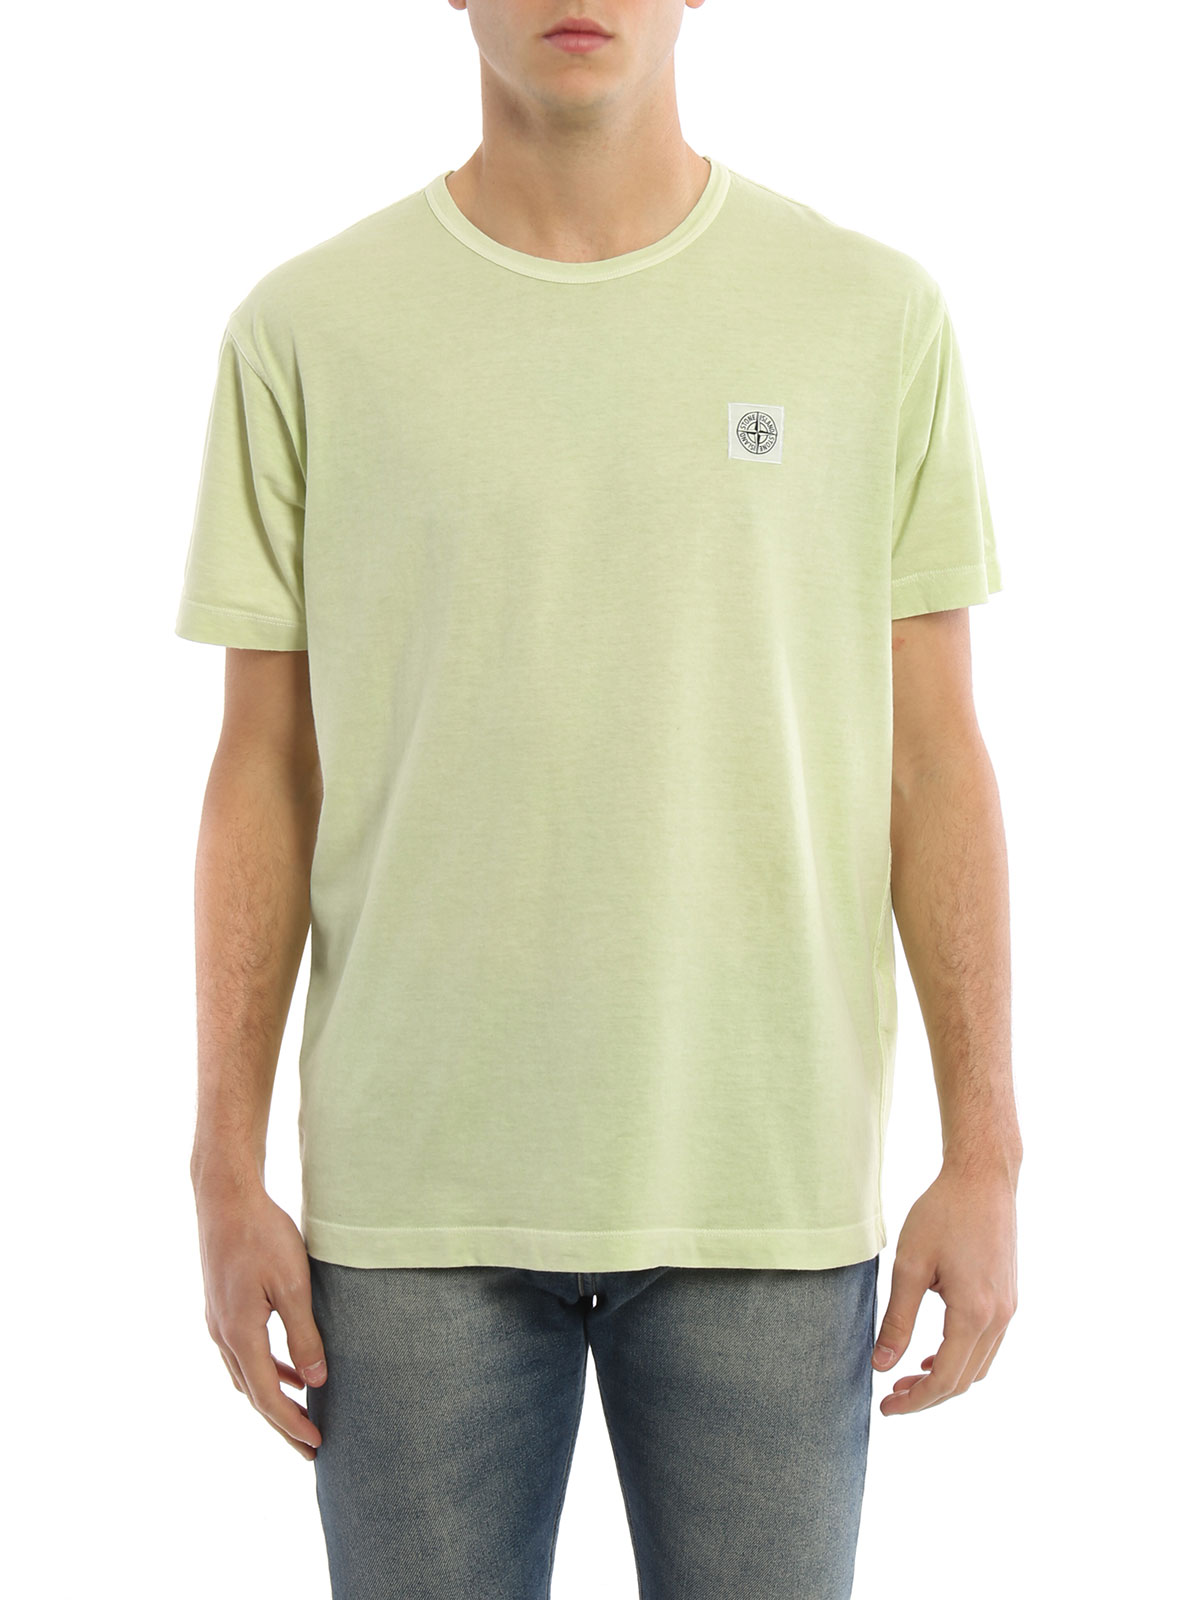 Tシャツ Stone Island - Tシャツ メンズ - ライトグリーン 